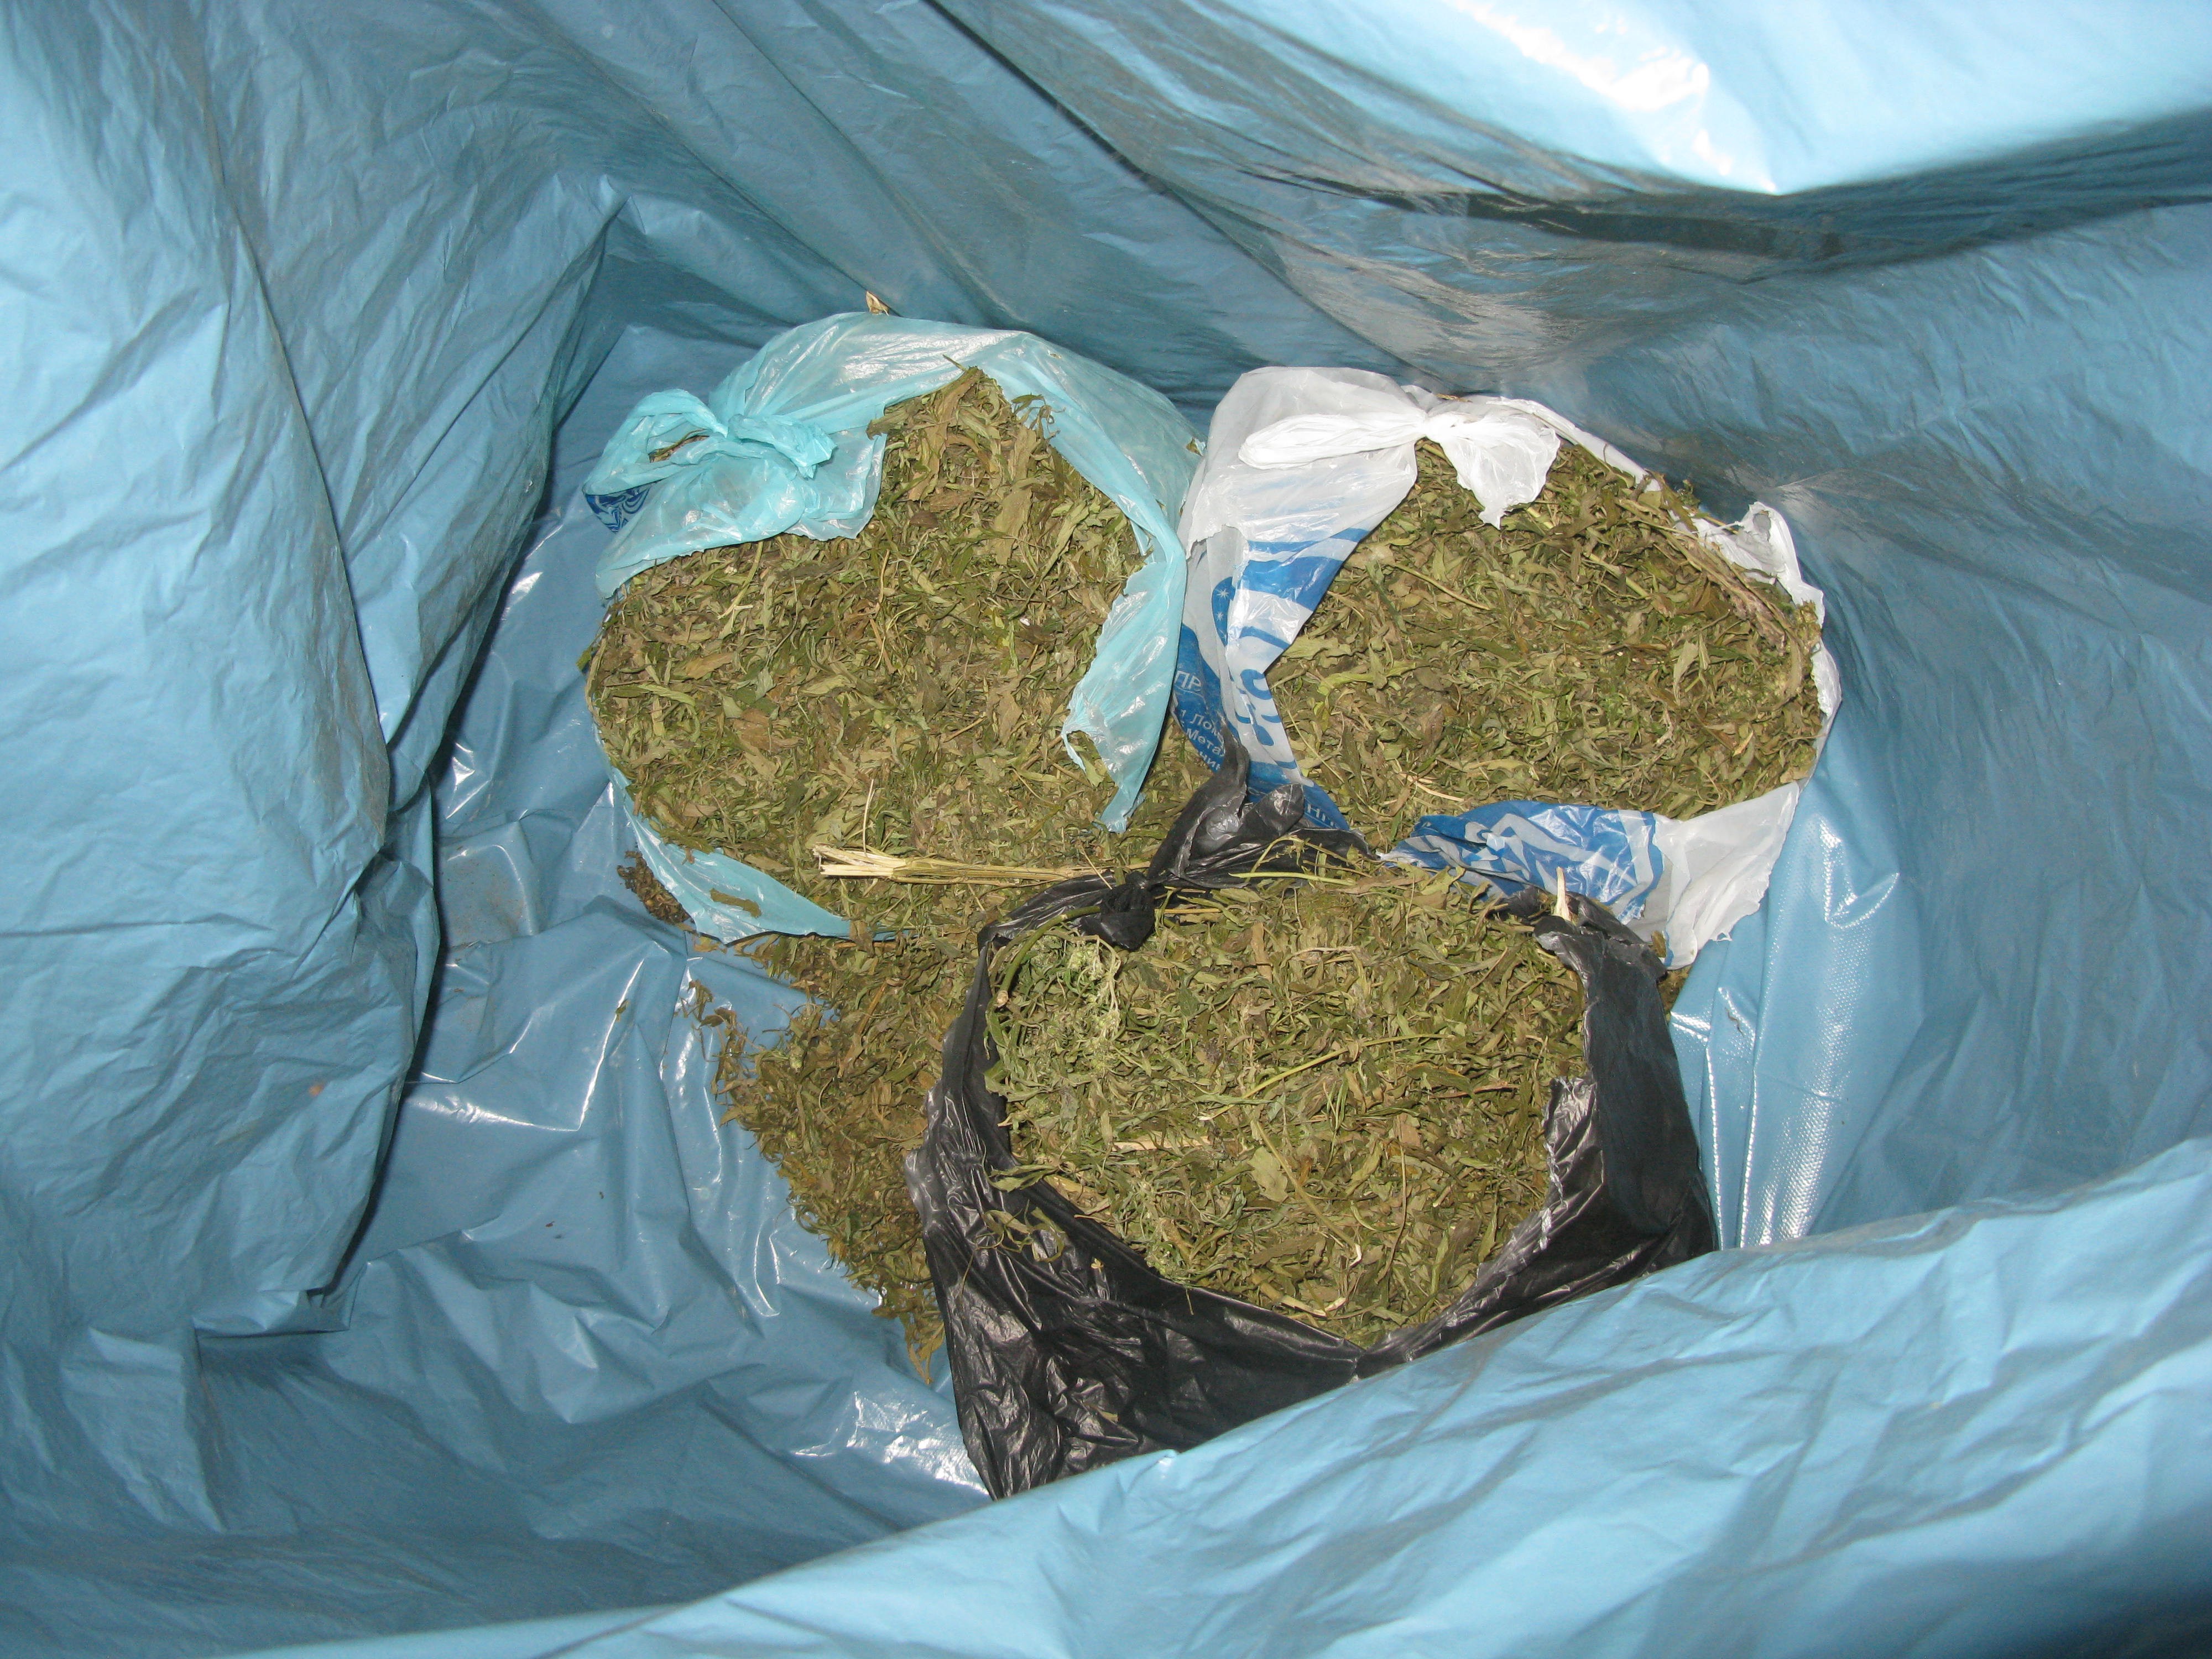  Вес изъятой марихуаны составил 1,7 килограмма Фото: УФСКН 